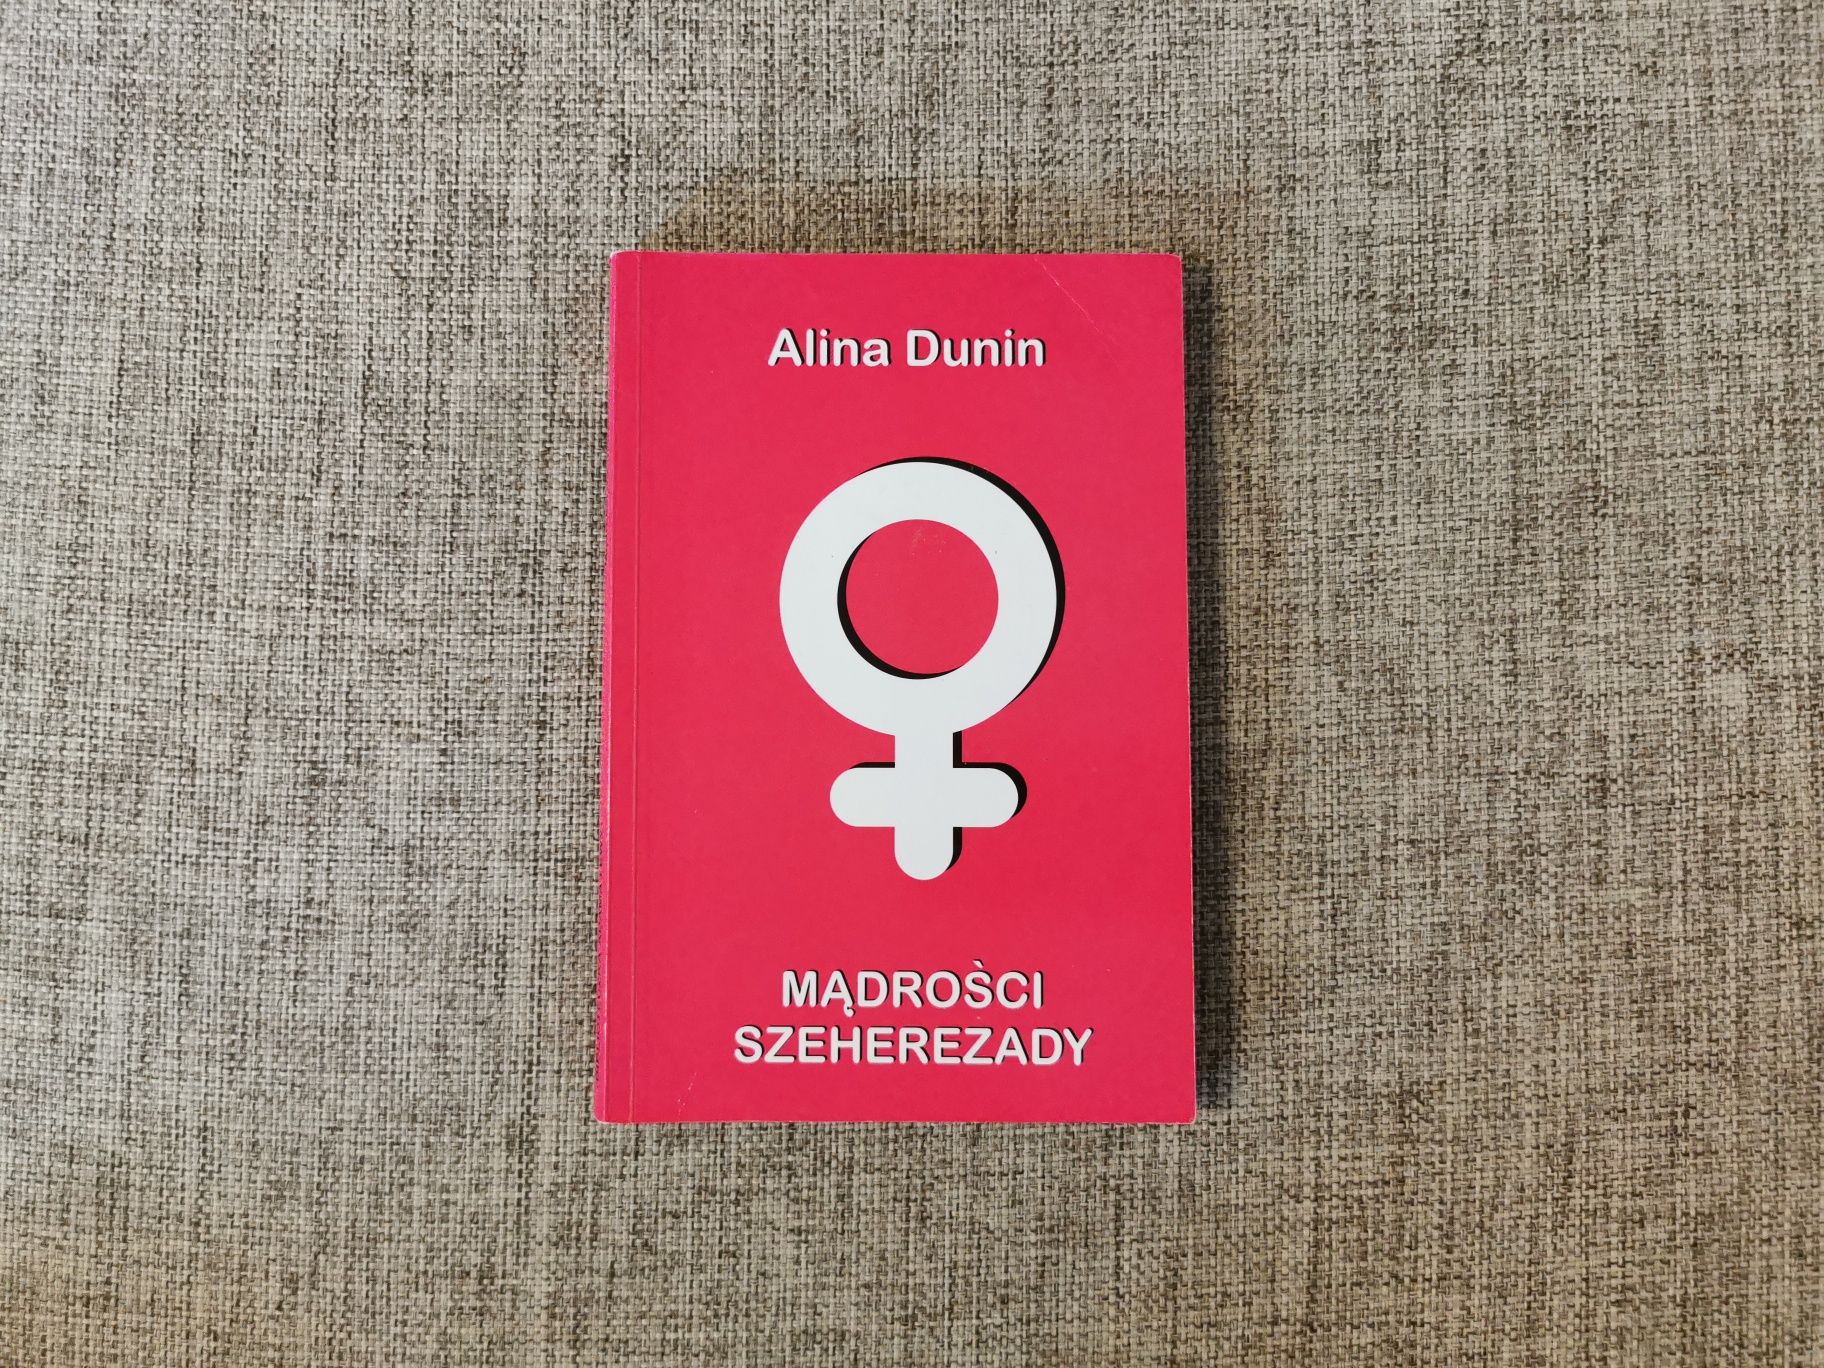 Alina Dunin - Mądrości Szeherezady